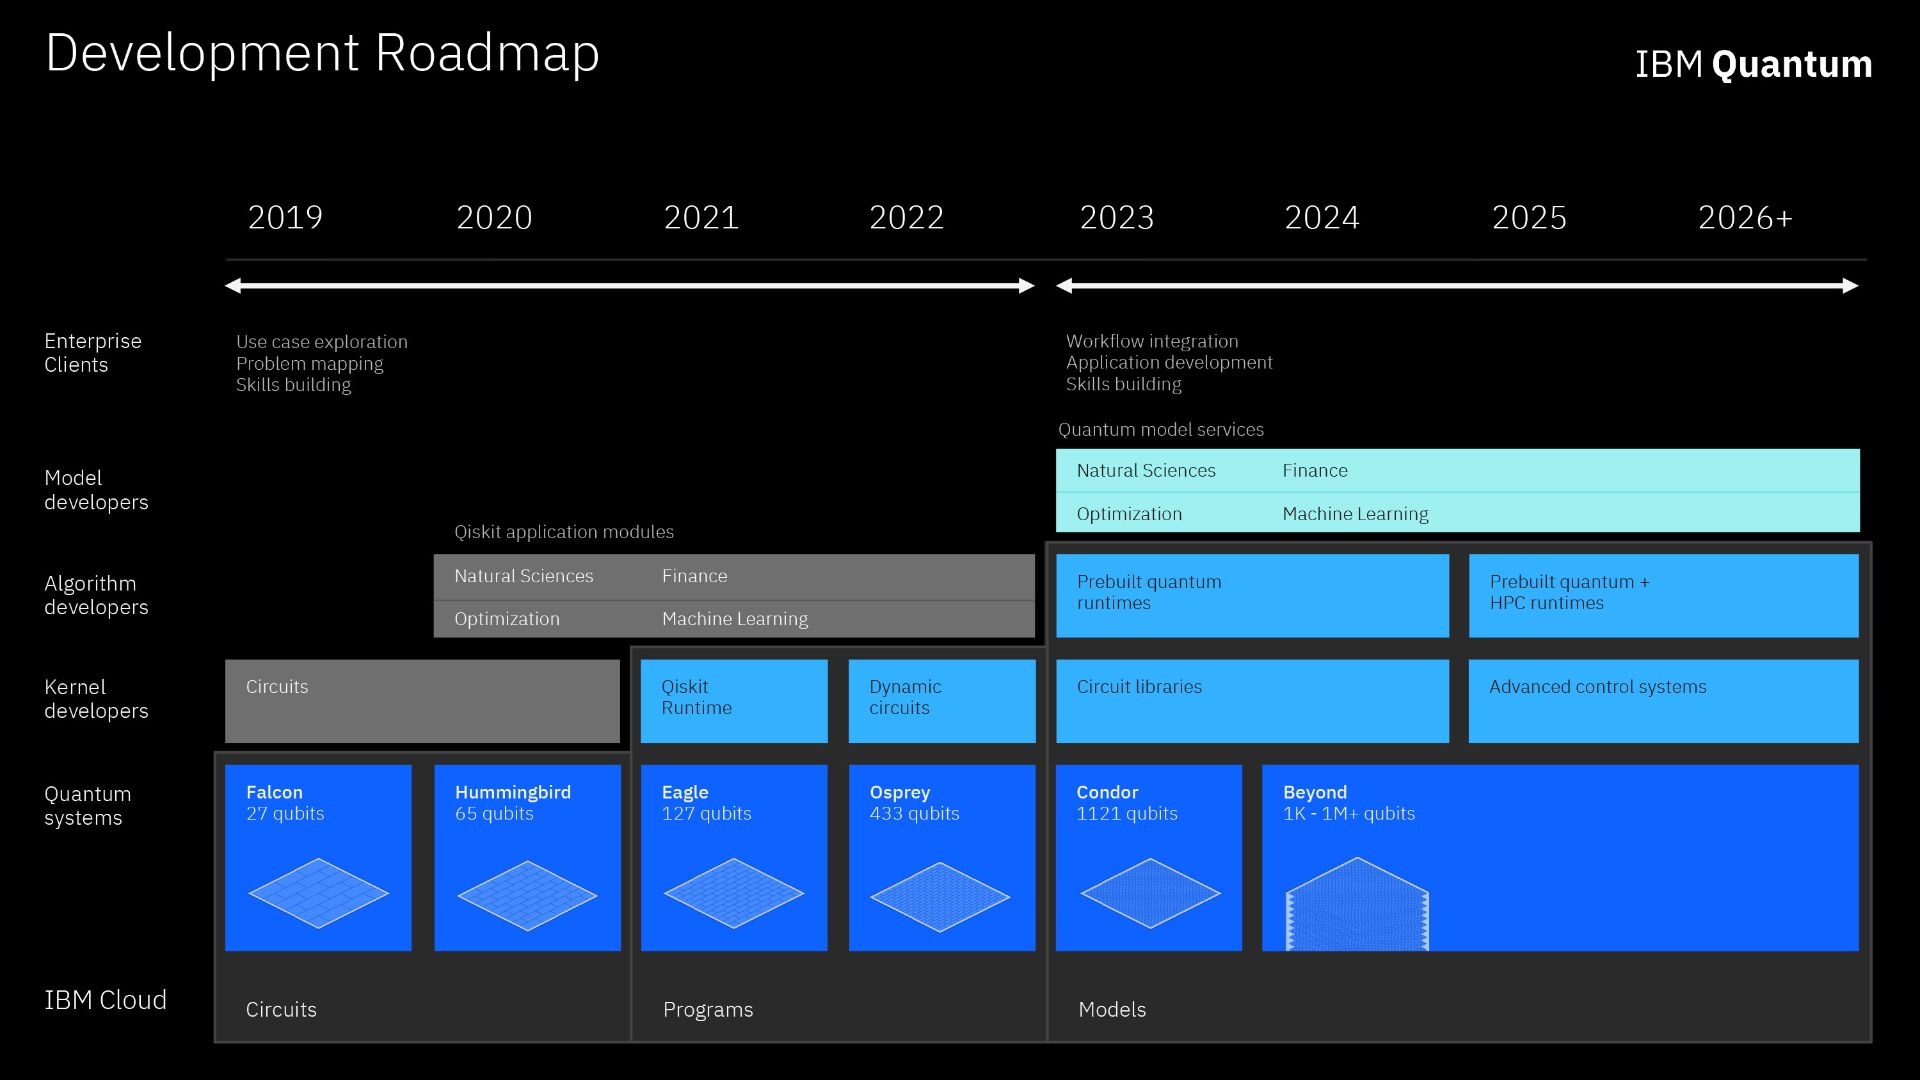 نقشه راه برنامه IBM برای رایانش کوانتومی تا سال 2026 و فراتر از آن